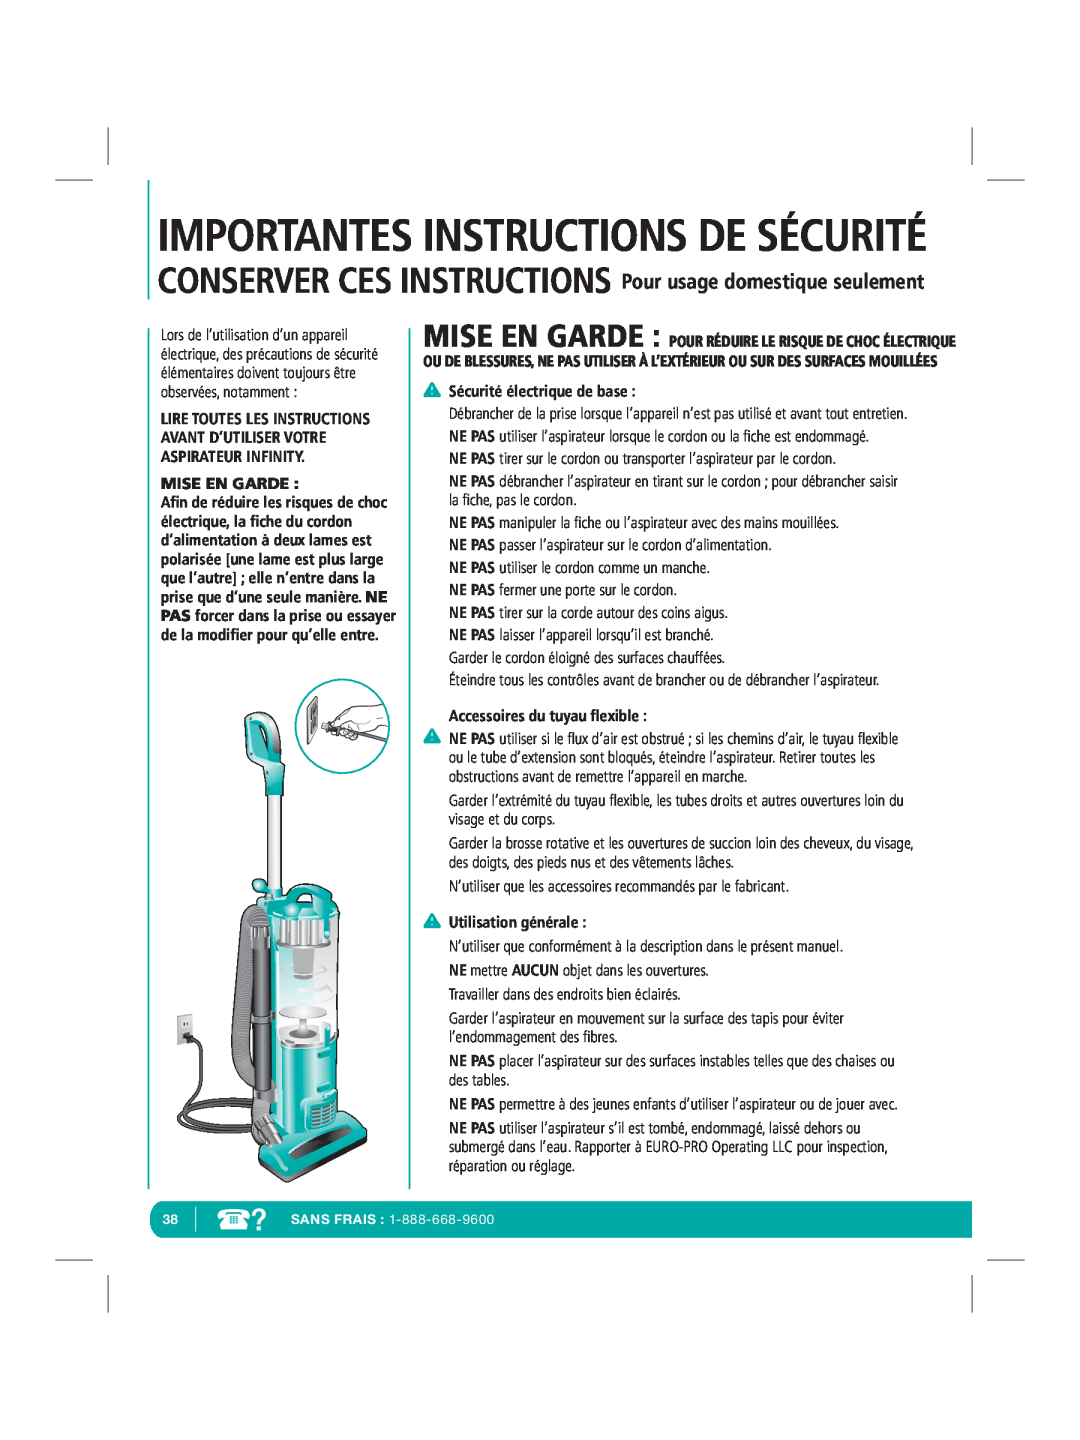 Infinity NV22Q Importantes Instructions De Sécurité, Mise En Garde, Sécurité électrique de base, Utilisation générale 